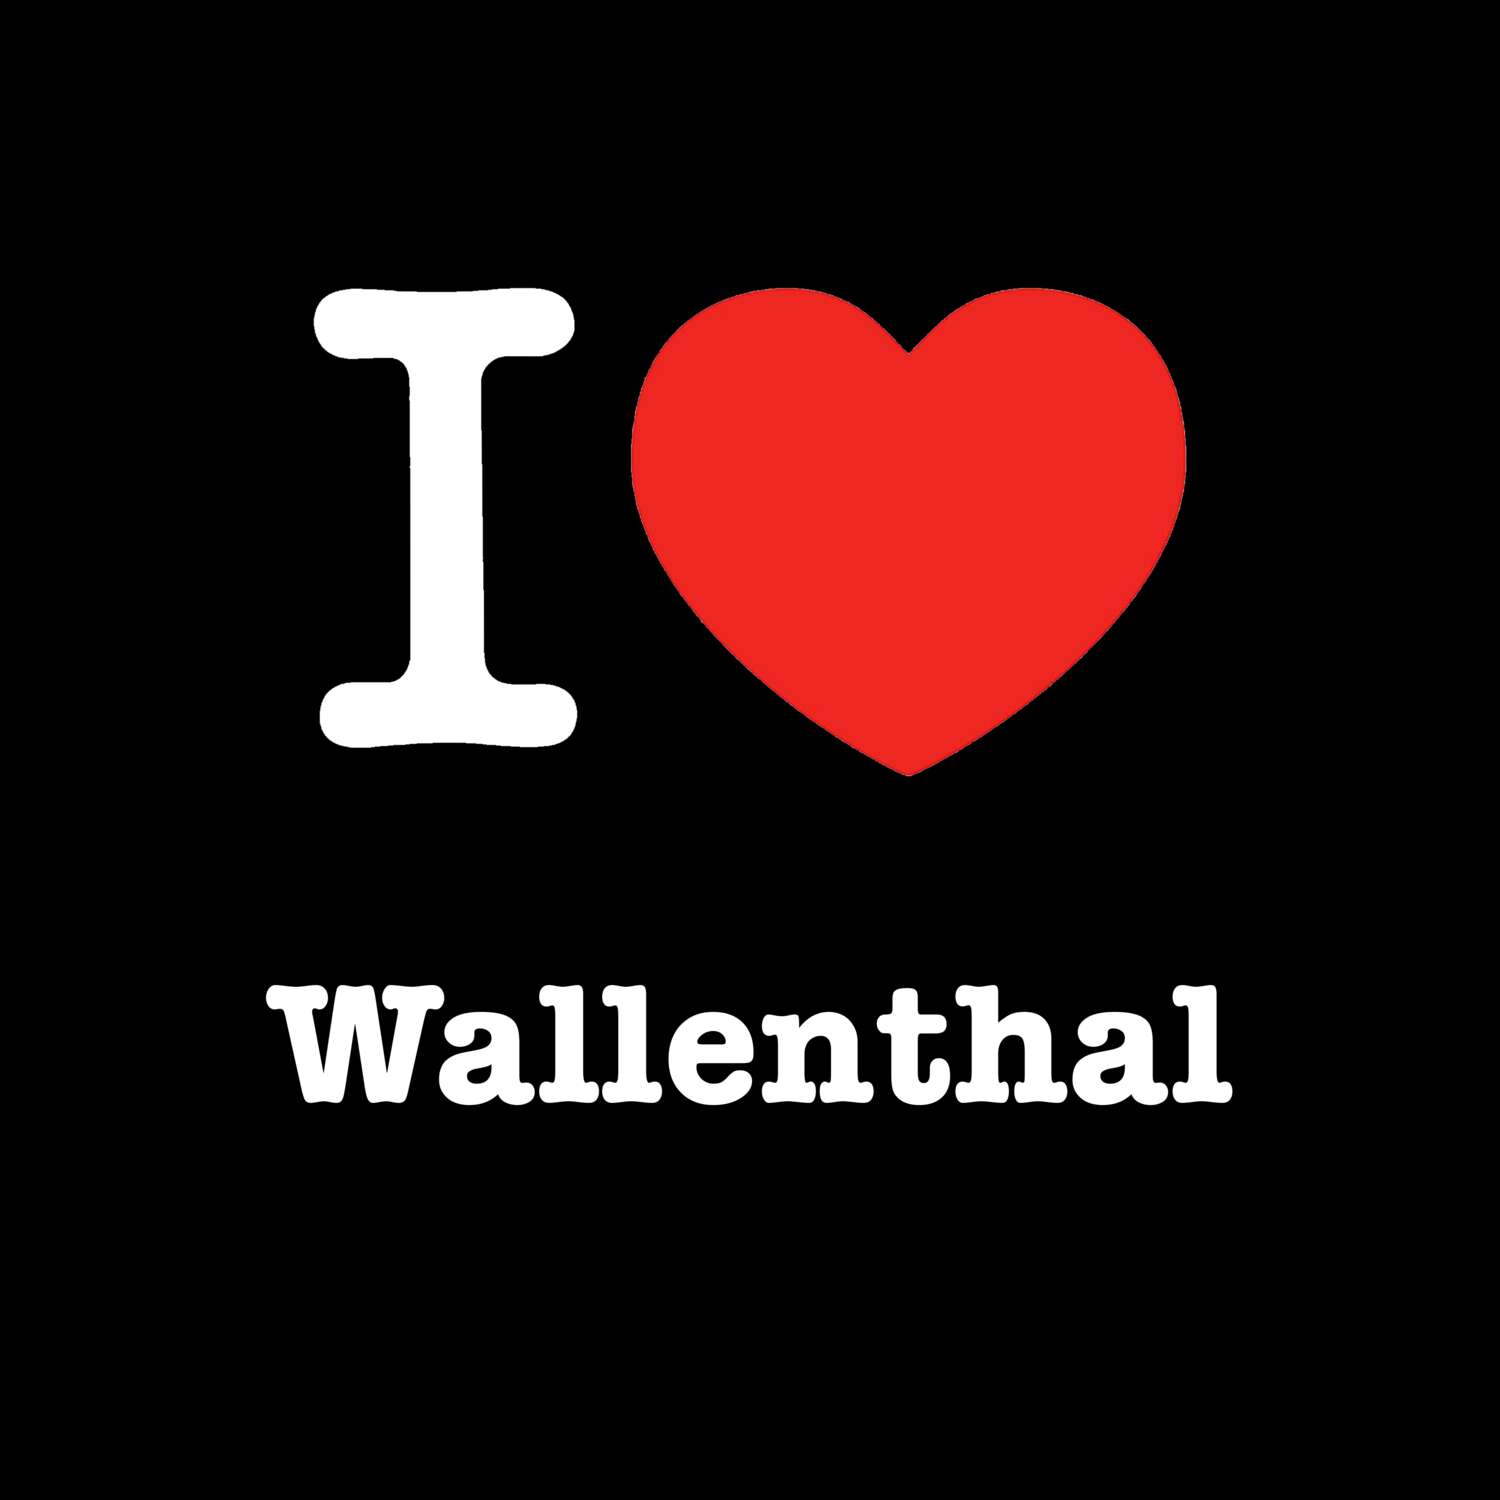 Wallenthal T-Shirt »I love«